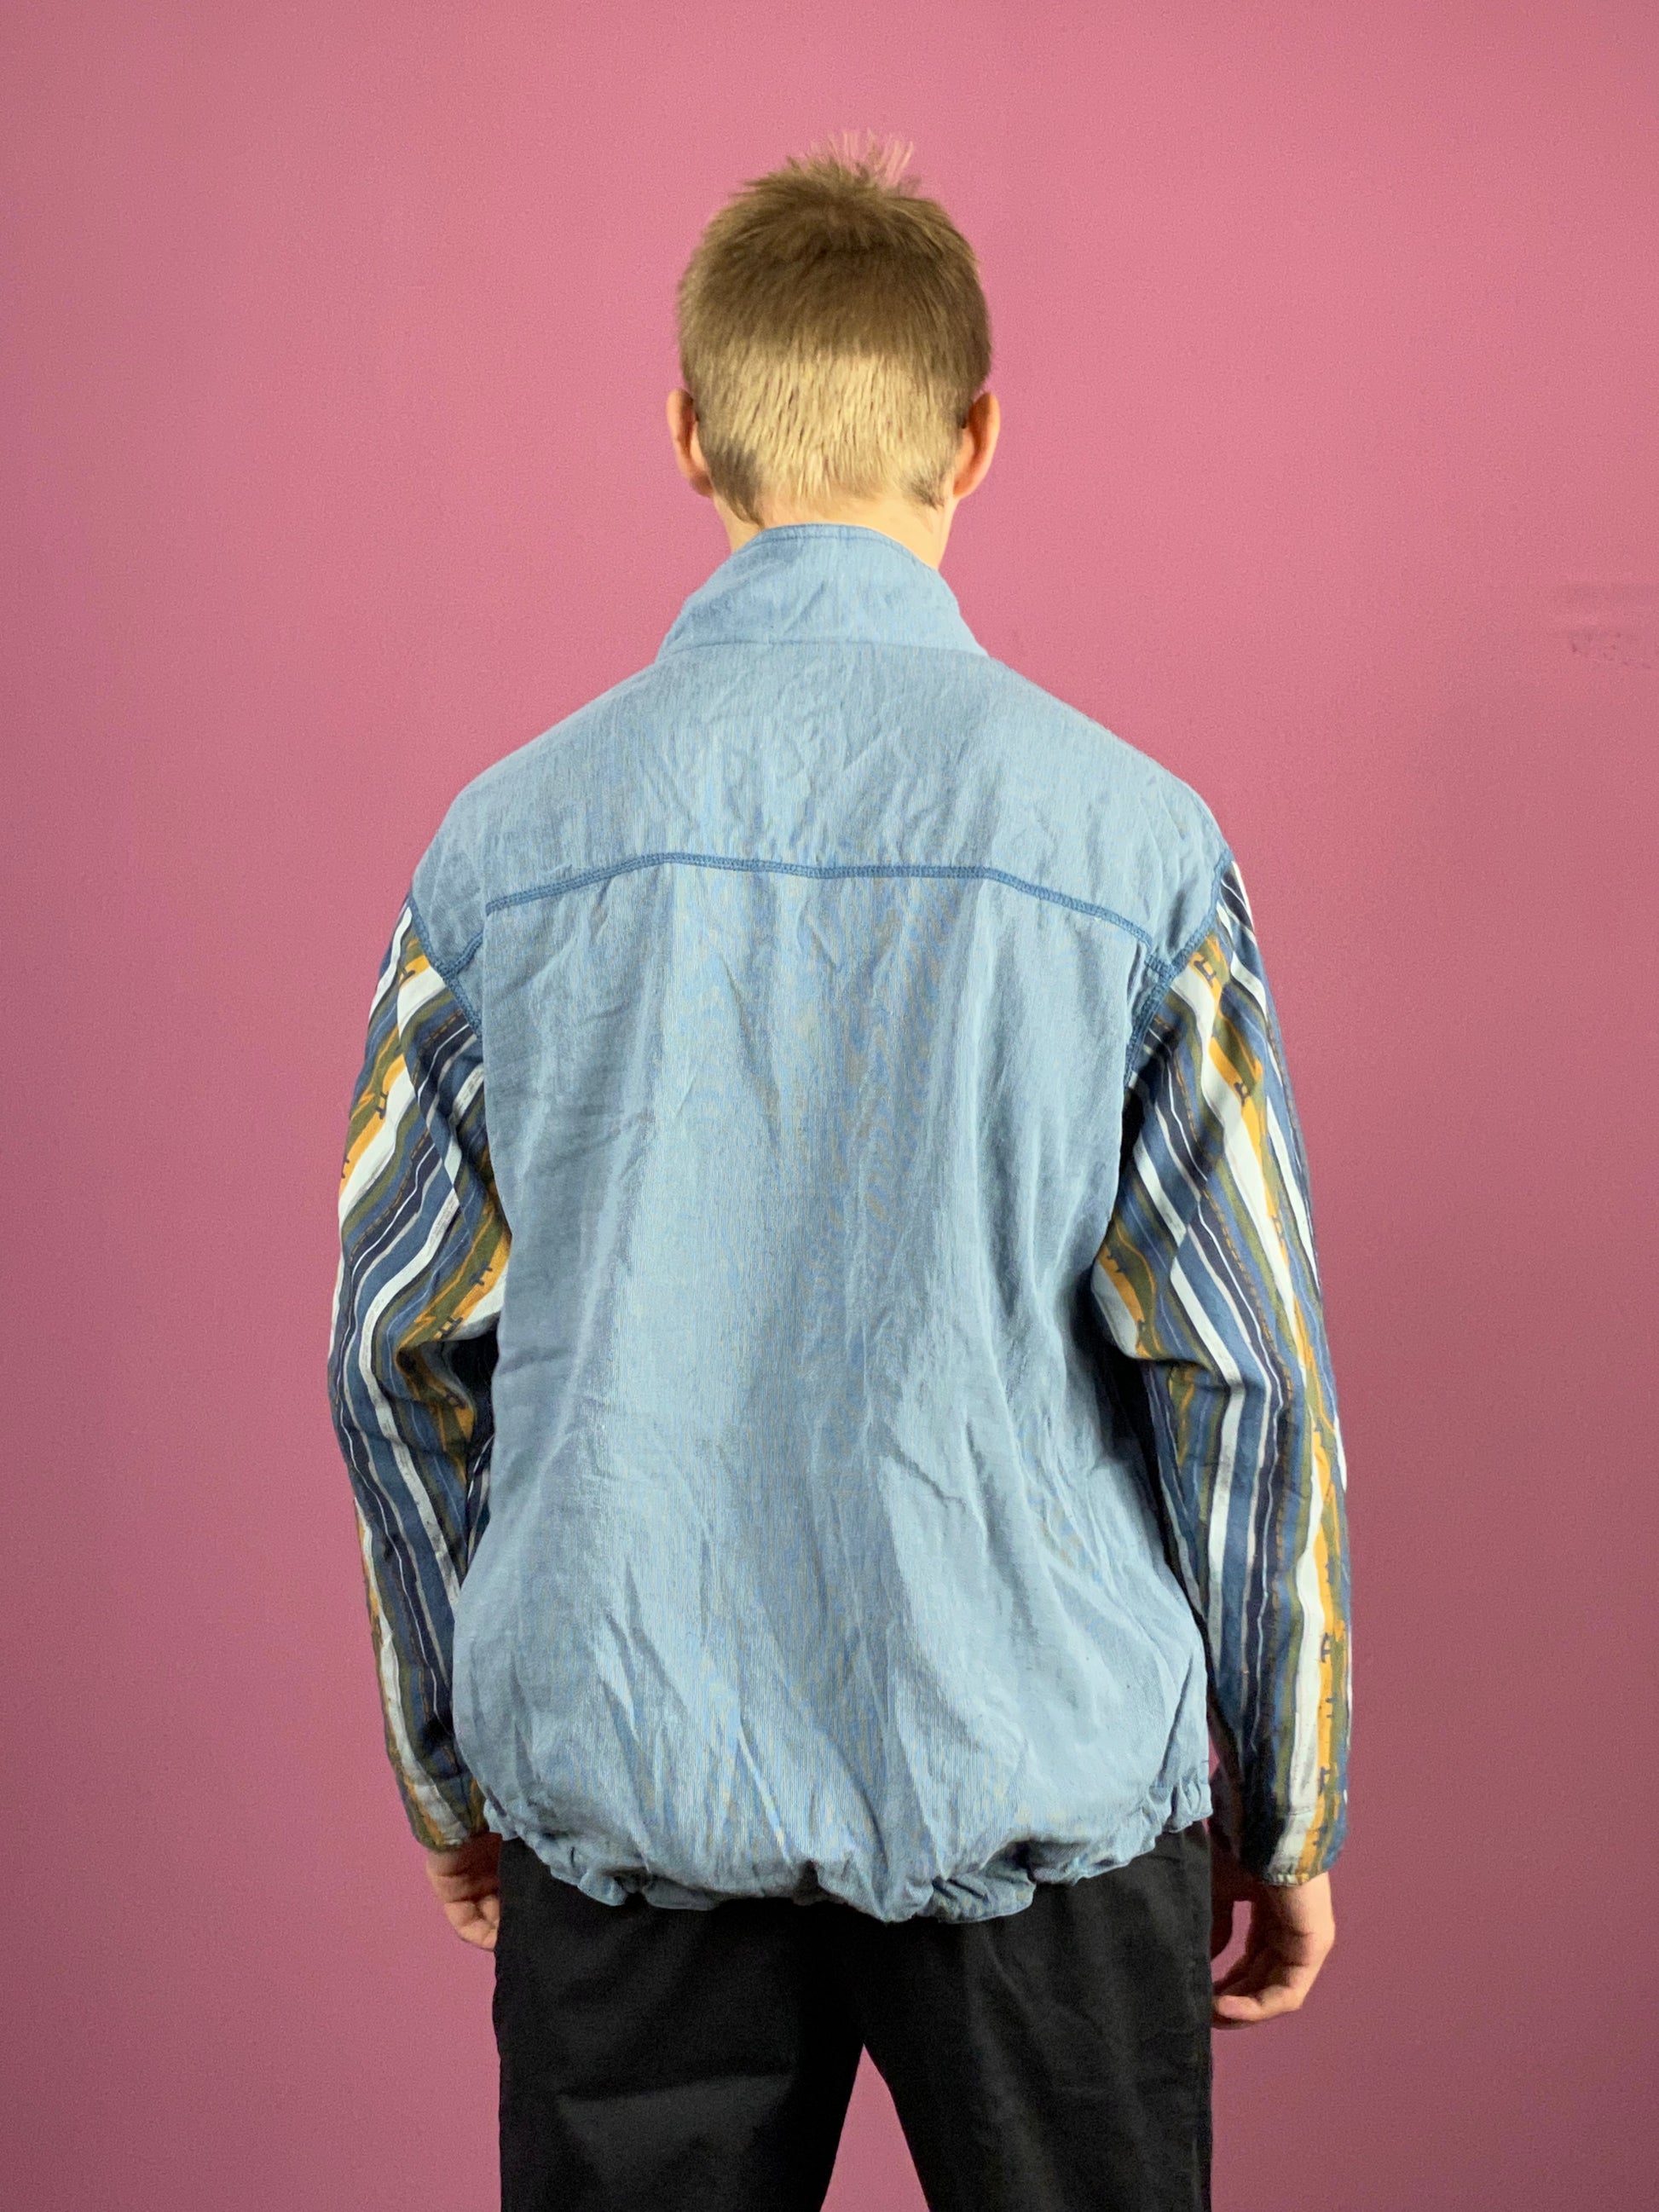 90s Reebok Vintage Men's Track Jacket - Medium Blue Nylon Blend